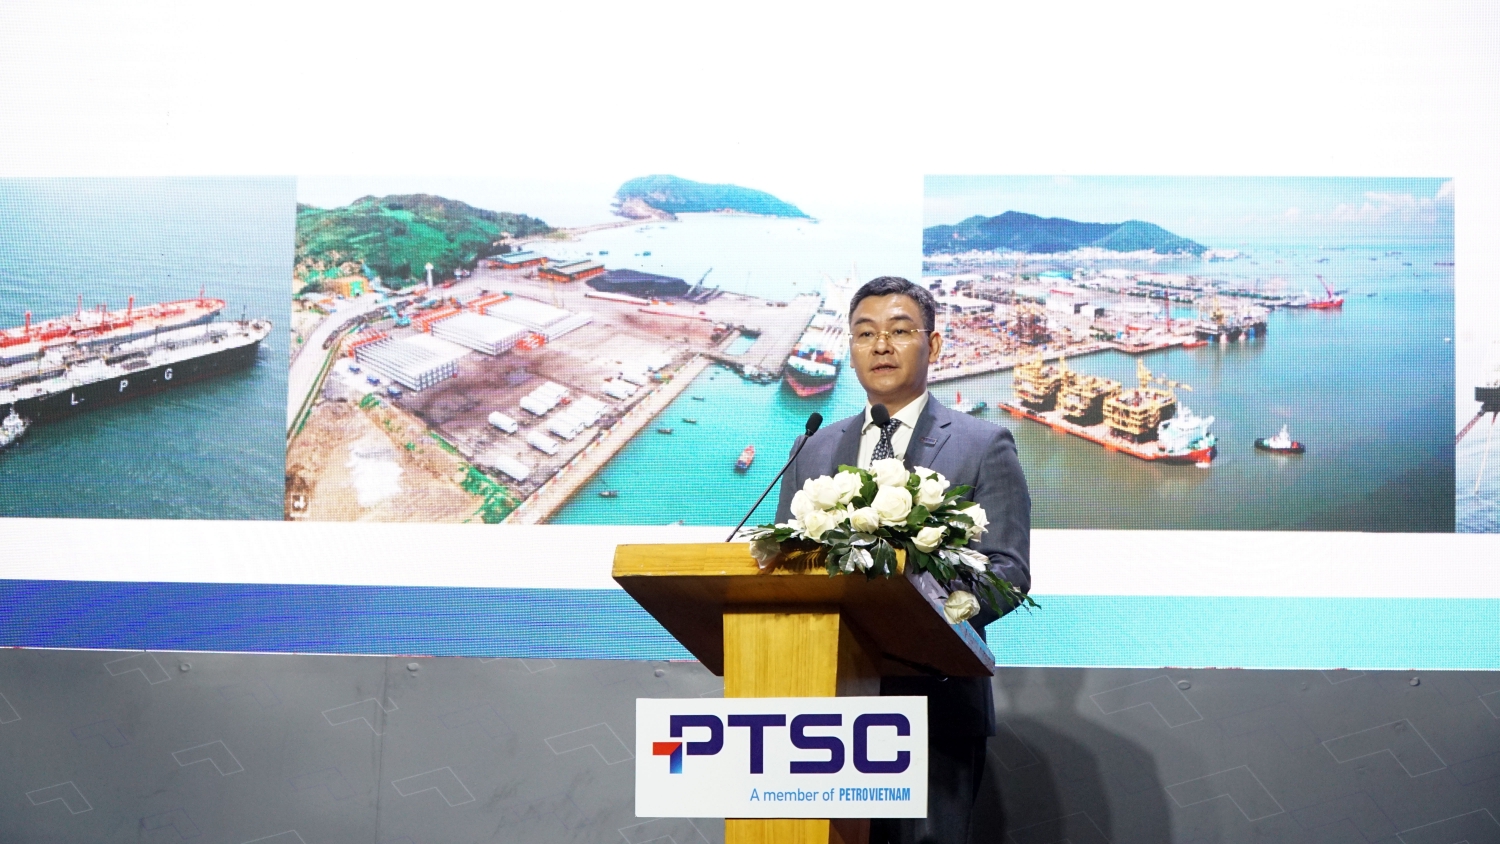 Đồng chí Lê Mạnh Cường – Phó Bí thư Đảng ủy, Tổng giám đốc PTSC đại diện người sử dụng lao động trình bày báo cáo tại Hội nghị